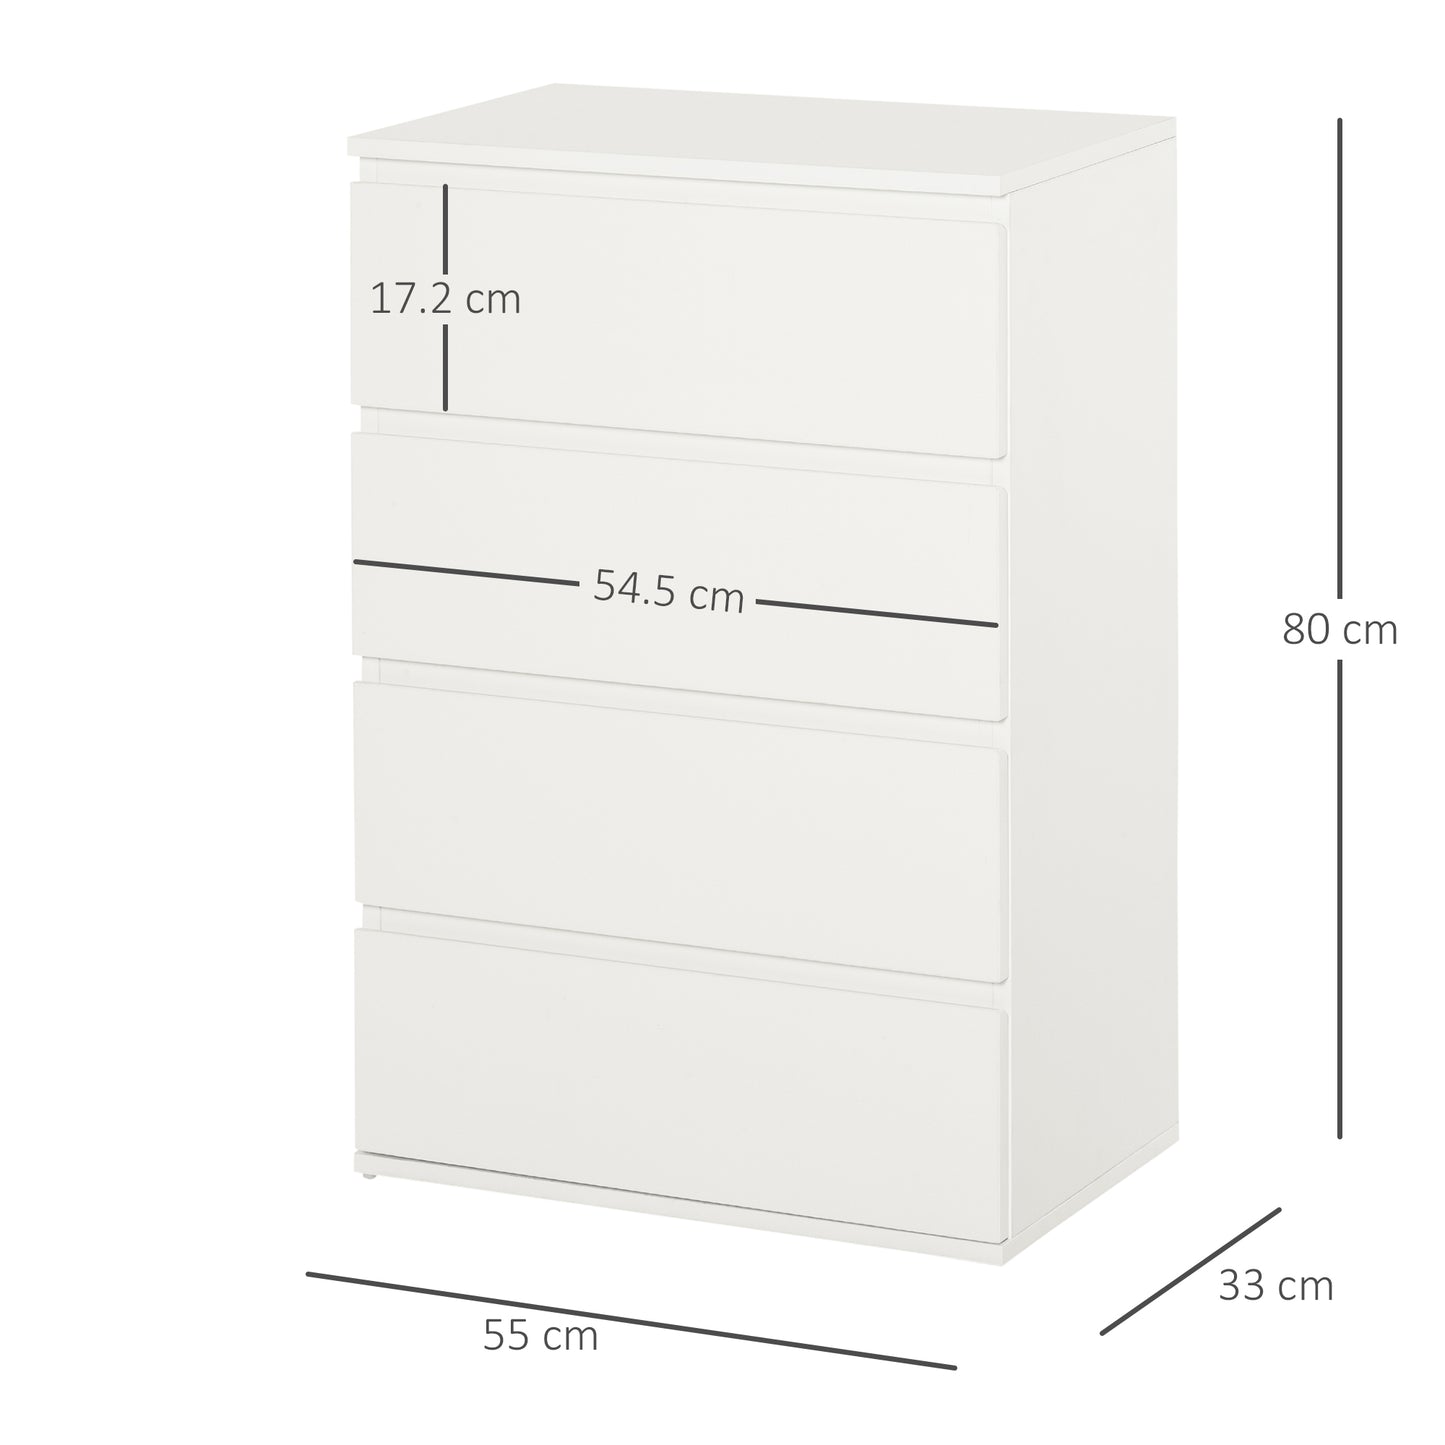 HOMCOM 4 Drawer Cabinet Storage Cupboard Wooden Freestanding Organiser Unit White